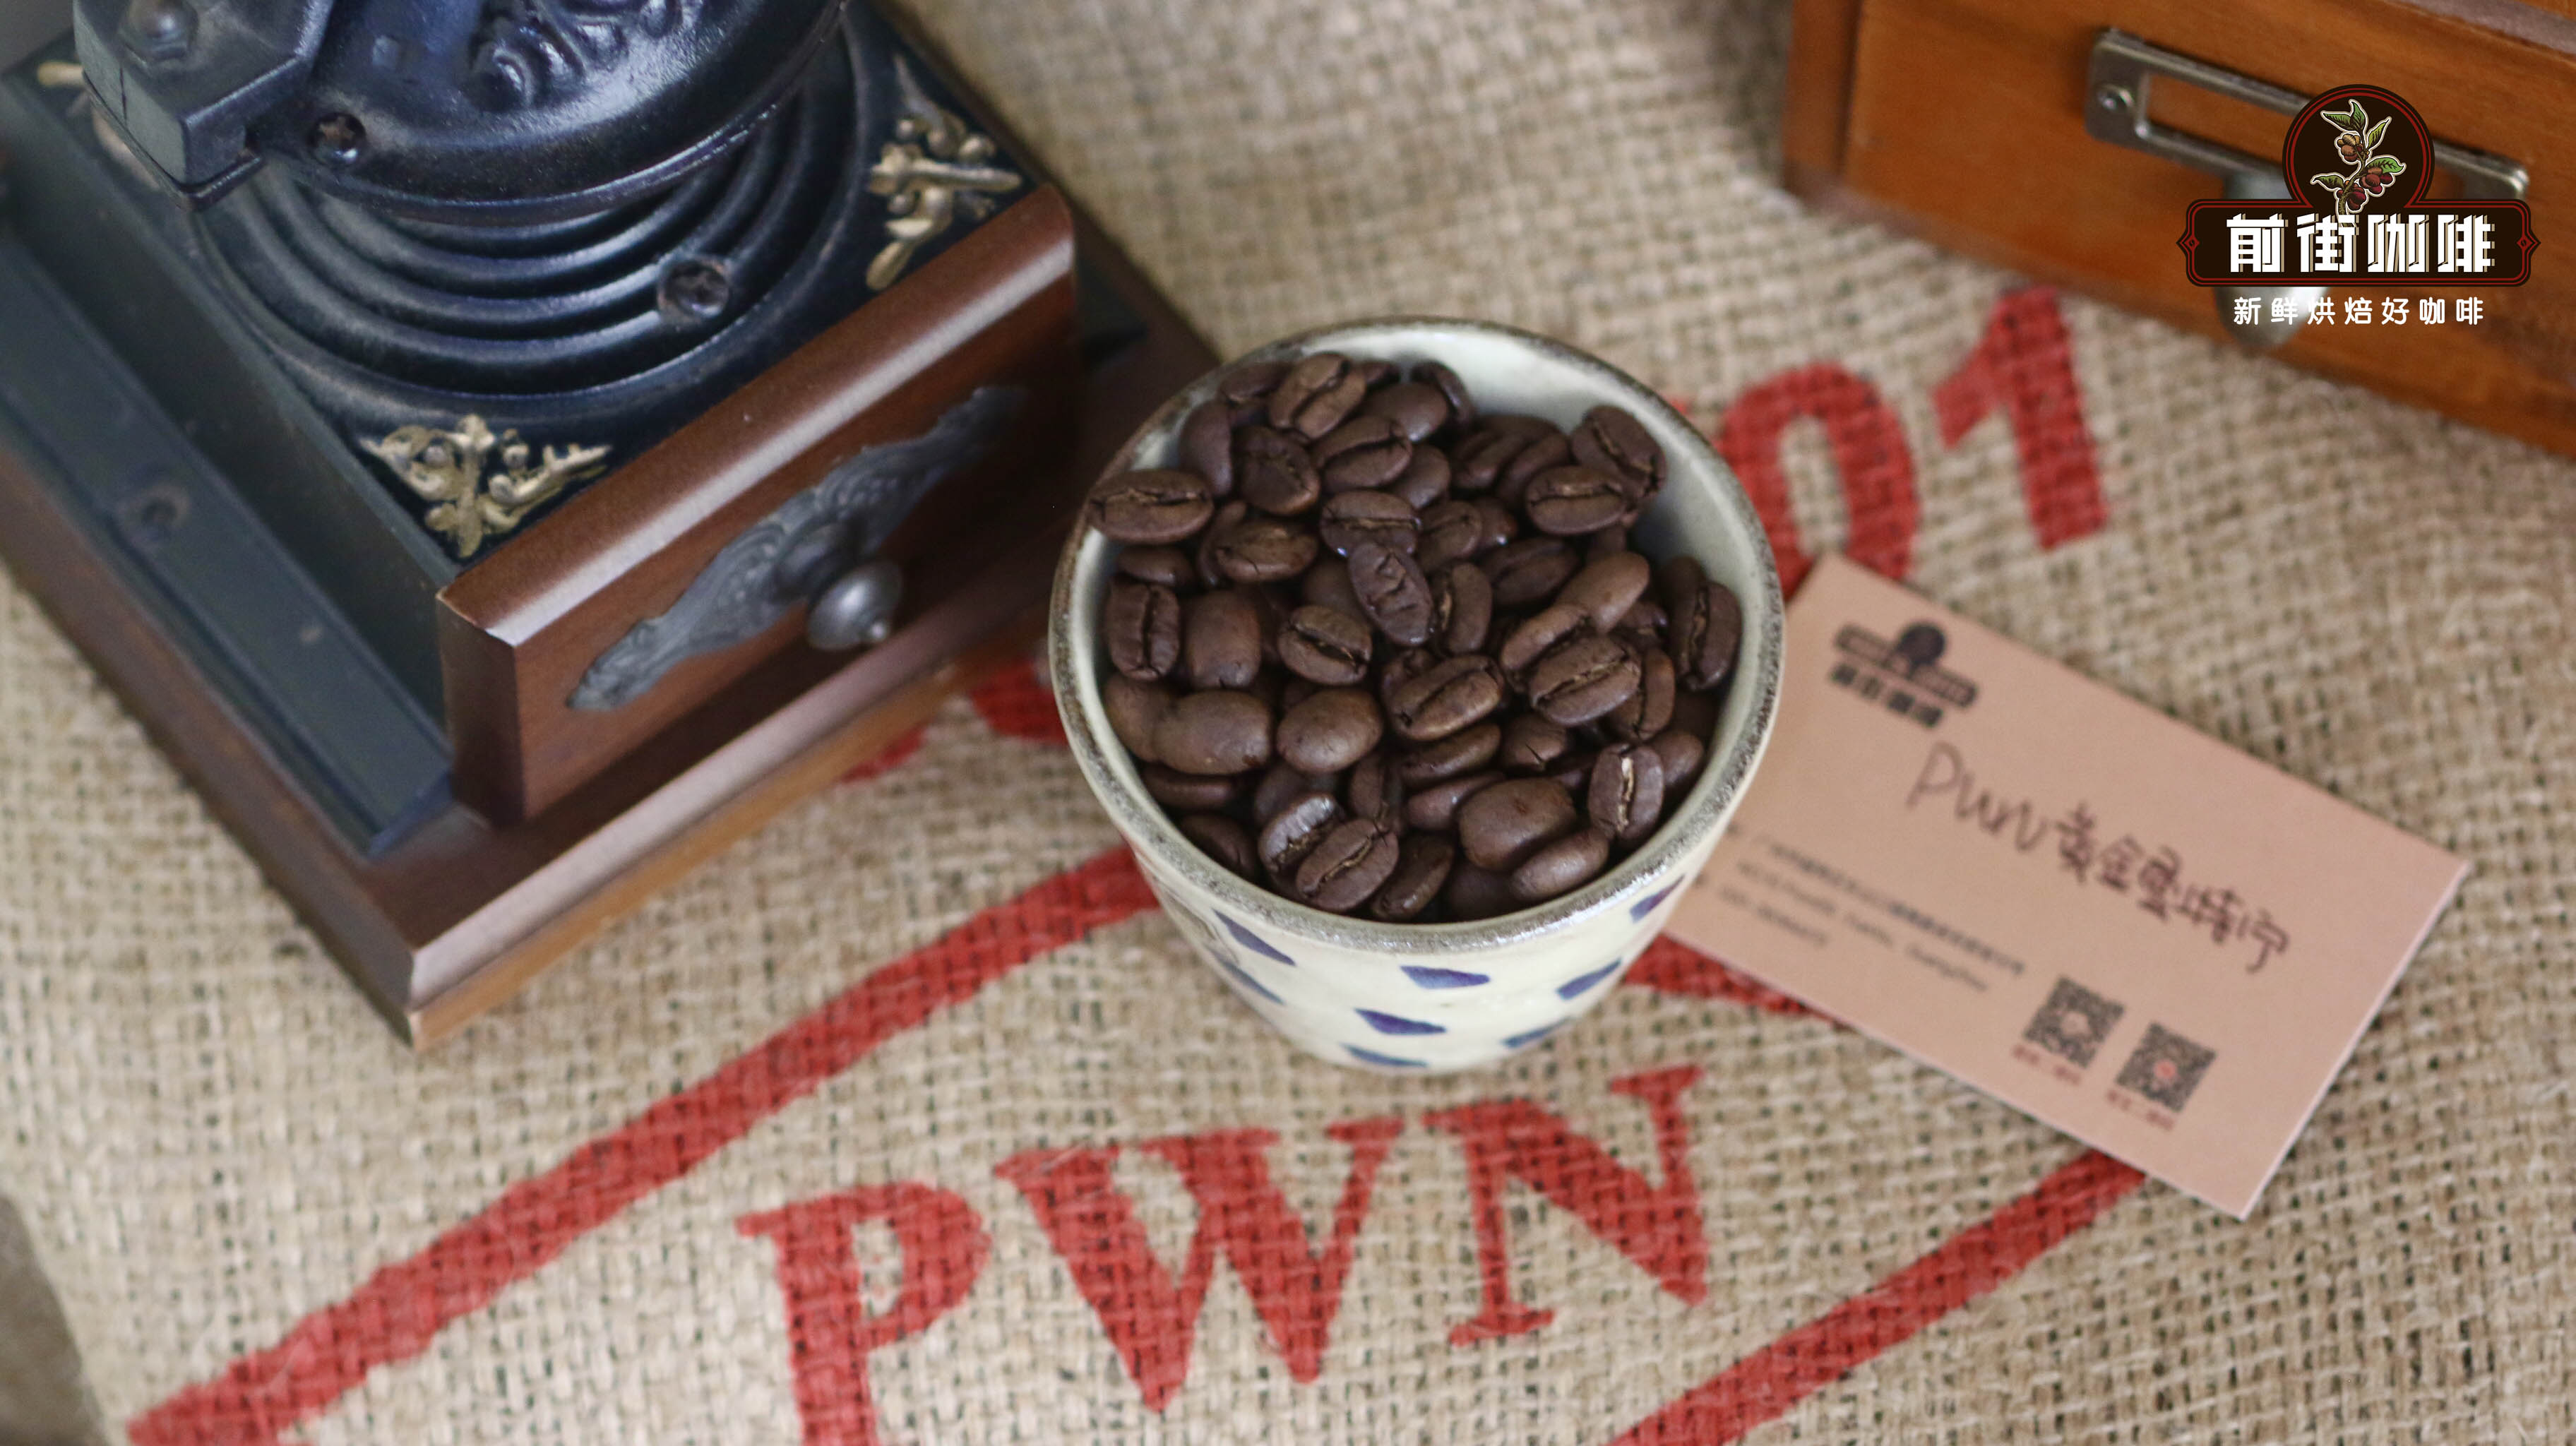 印尼黃金曼特寧咖啡品牌價格檔次介紹，印尼黃金曼特寧咖啡風味描述